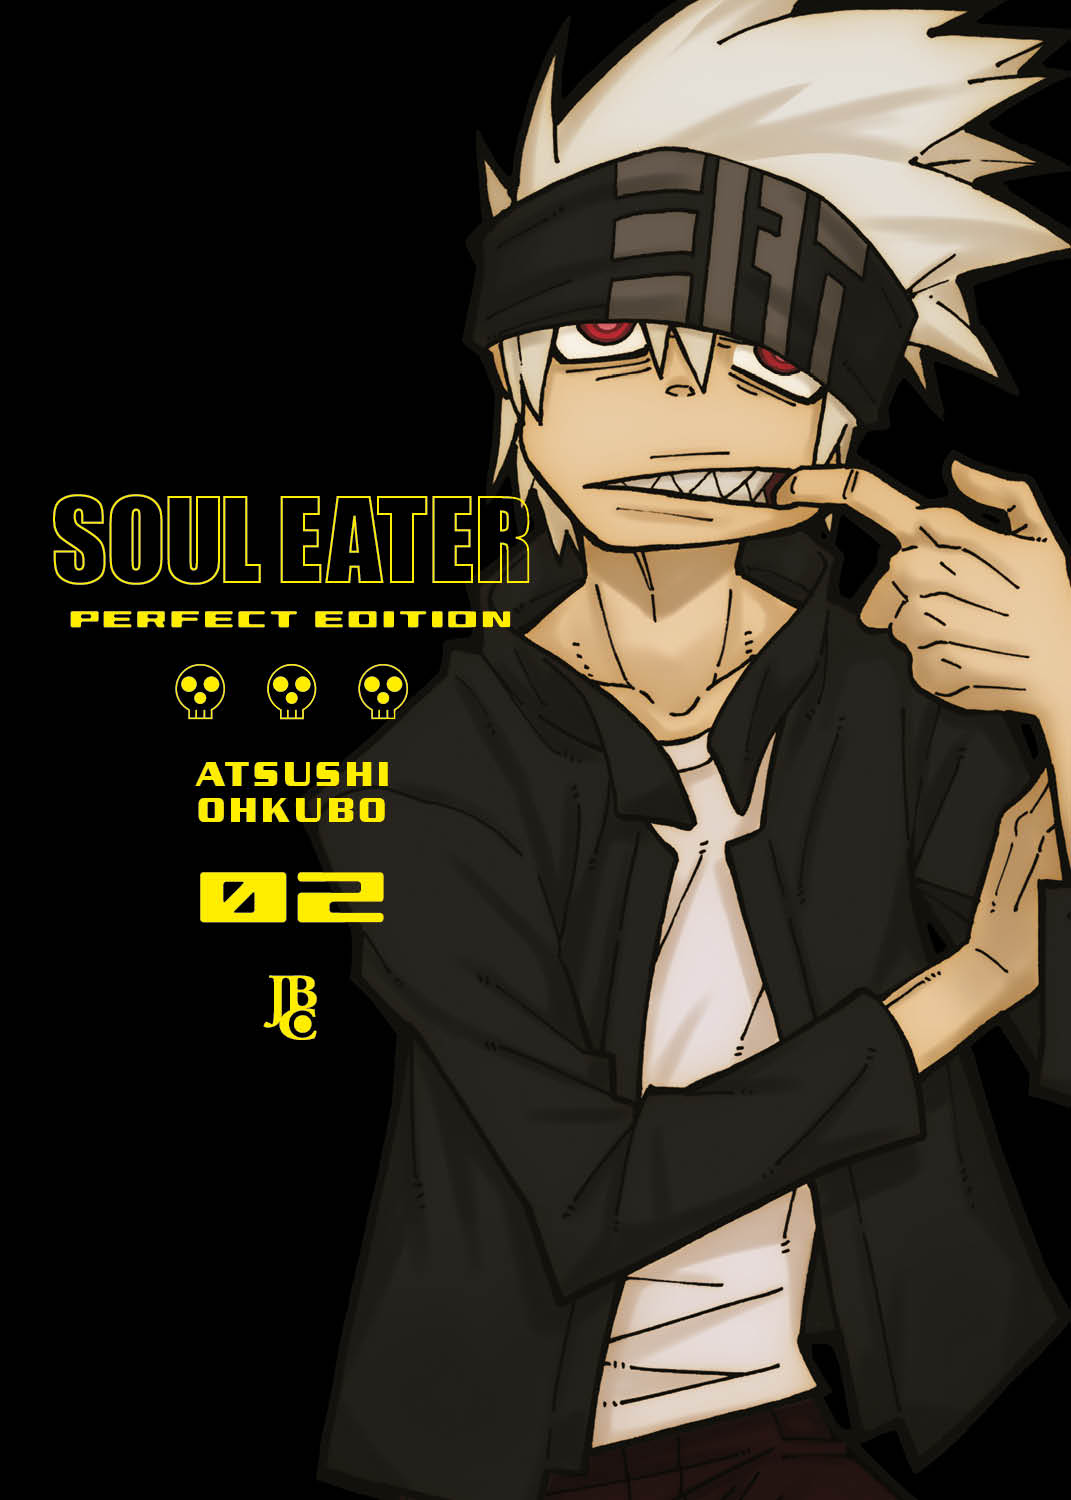 Soul Eater ganha versão dublada na Funimation